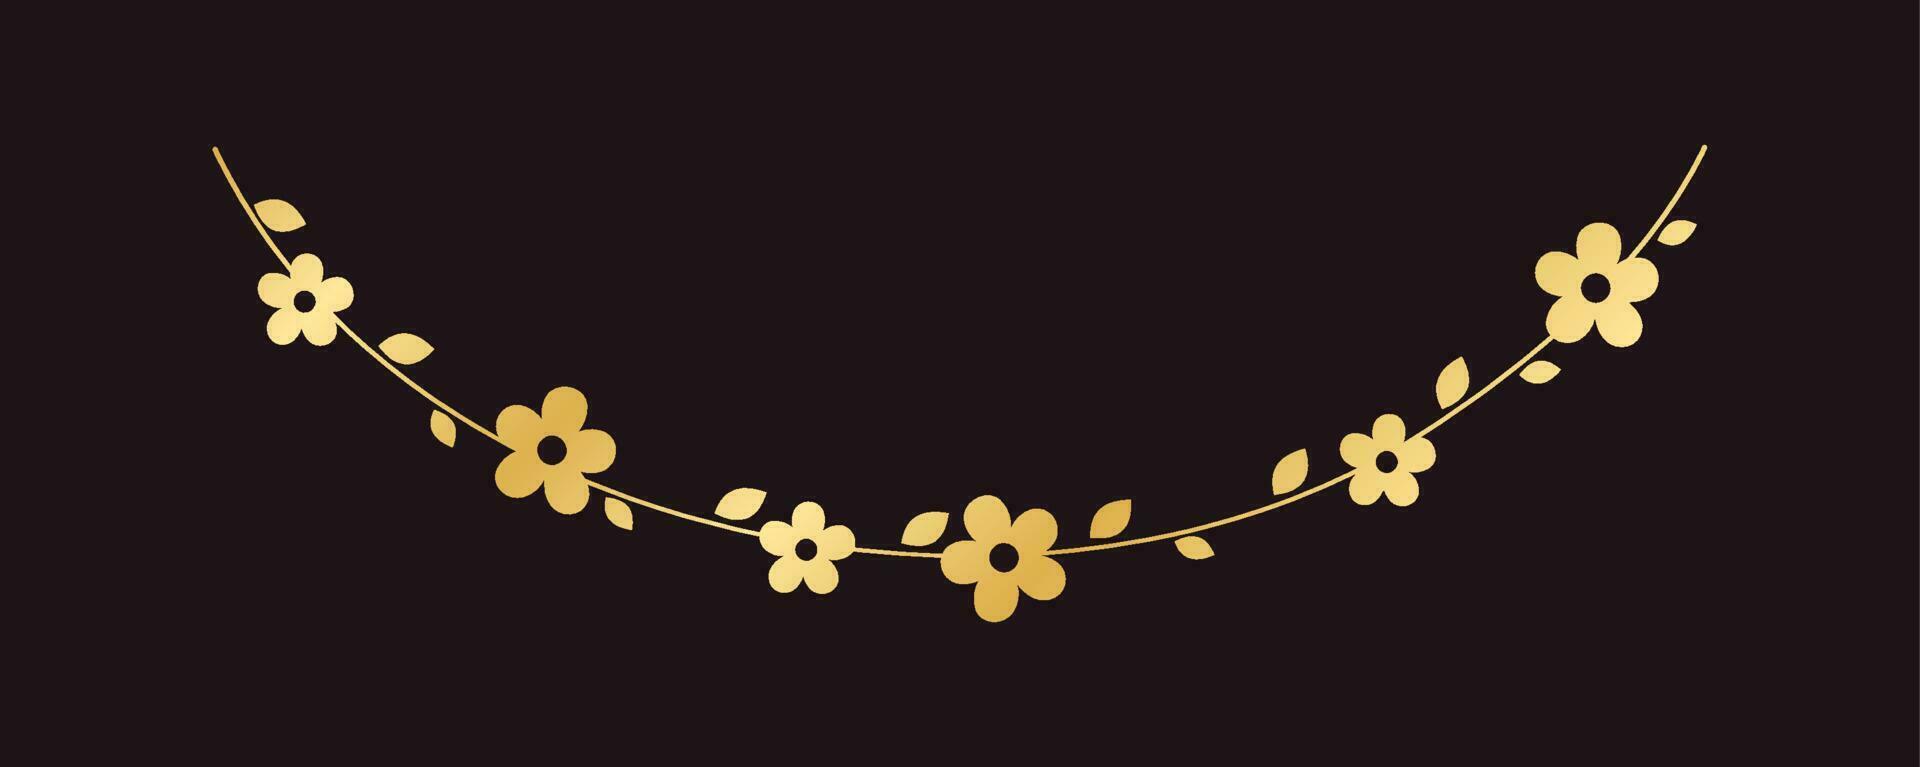 Golden hanging flower garland vector illustration. Simple gold floral botanical design elements for spring.